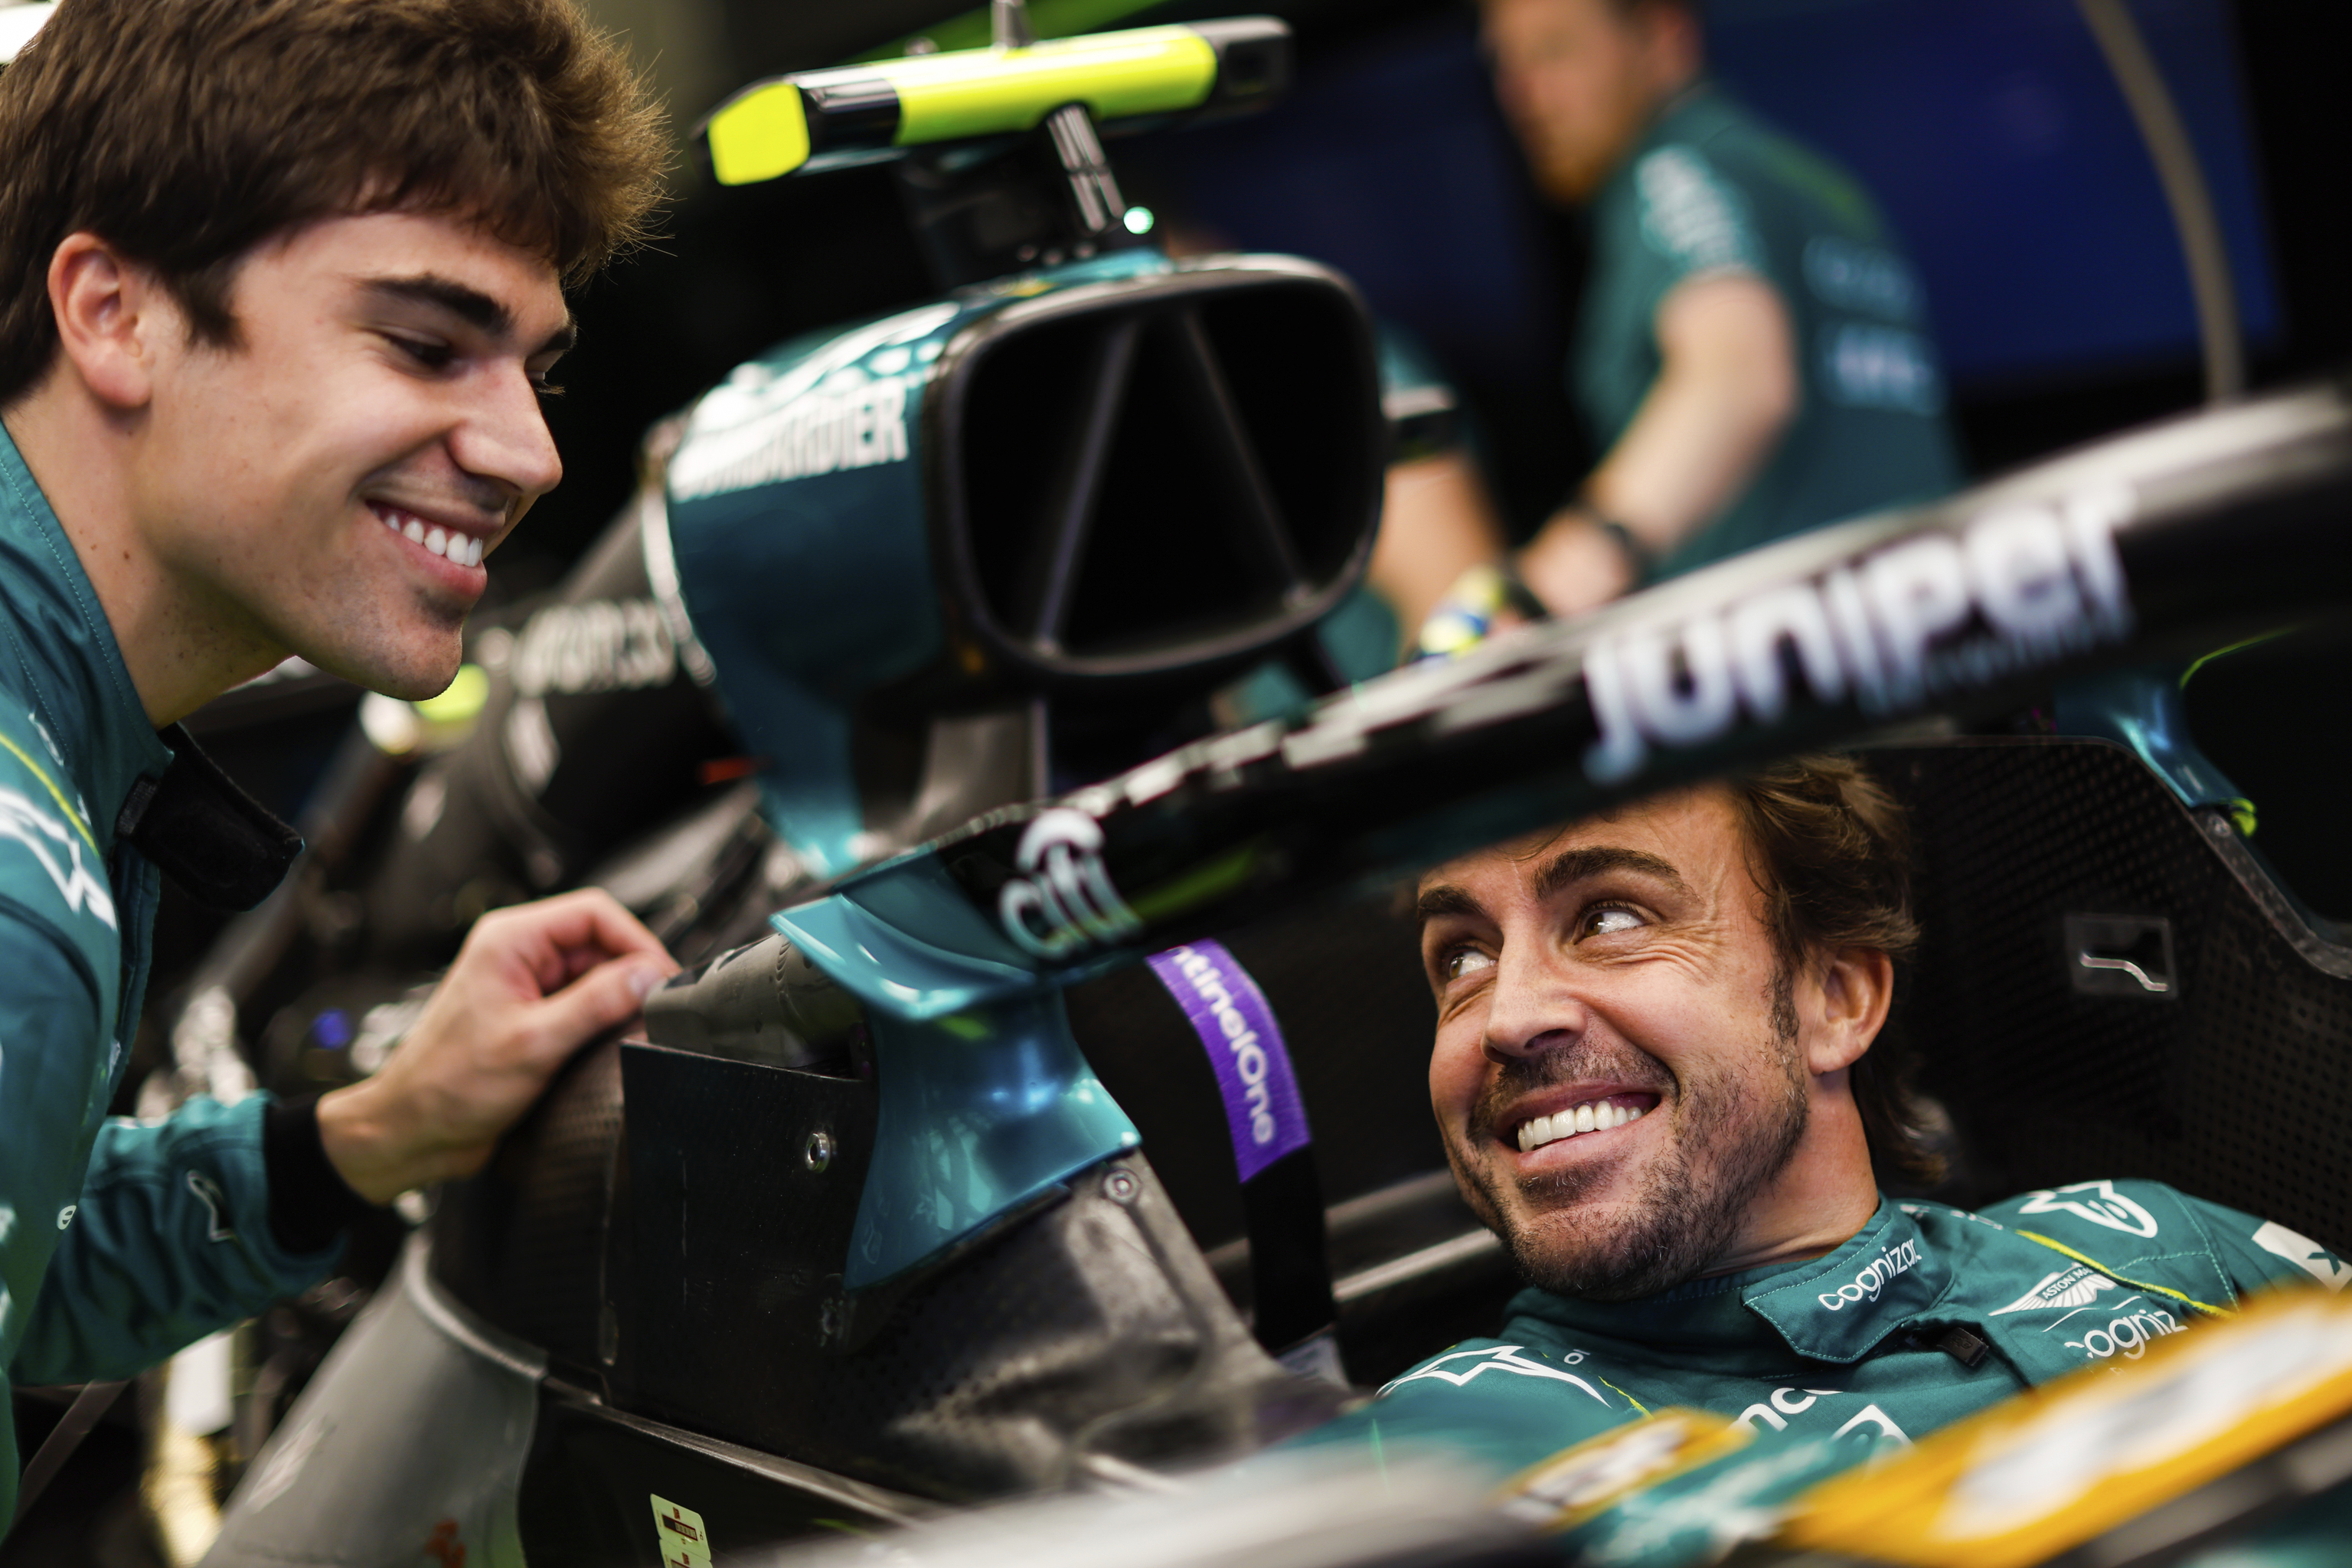 F1: ¿Cómo es Fernando Alonso como compañero de equipo? "Tiene fama de complicado, pero me cuesta creerla" | Fórmula 1 2023